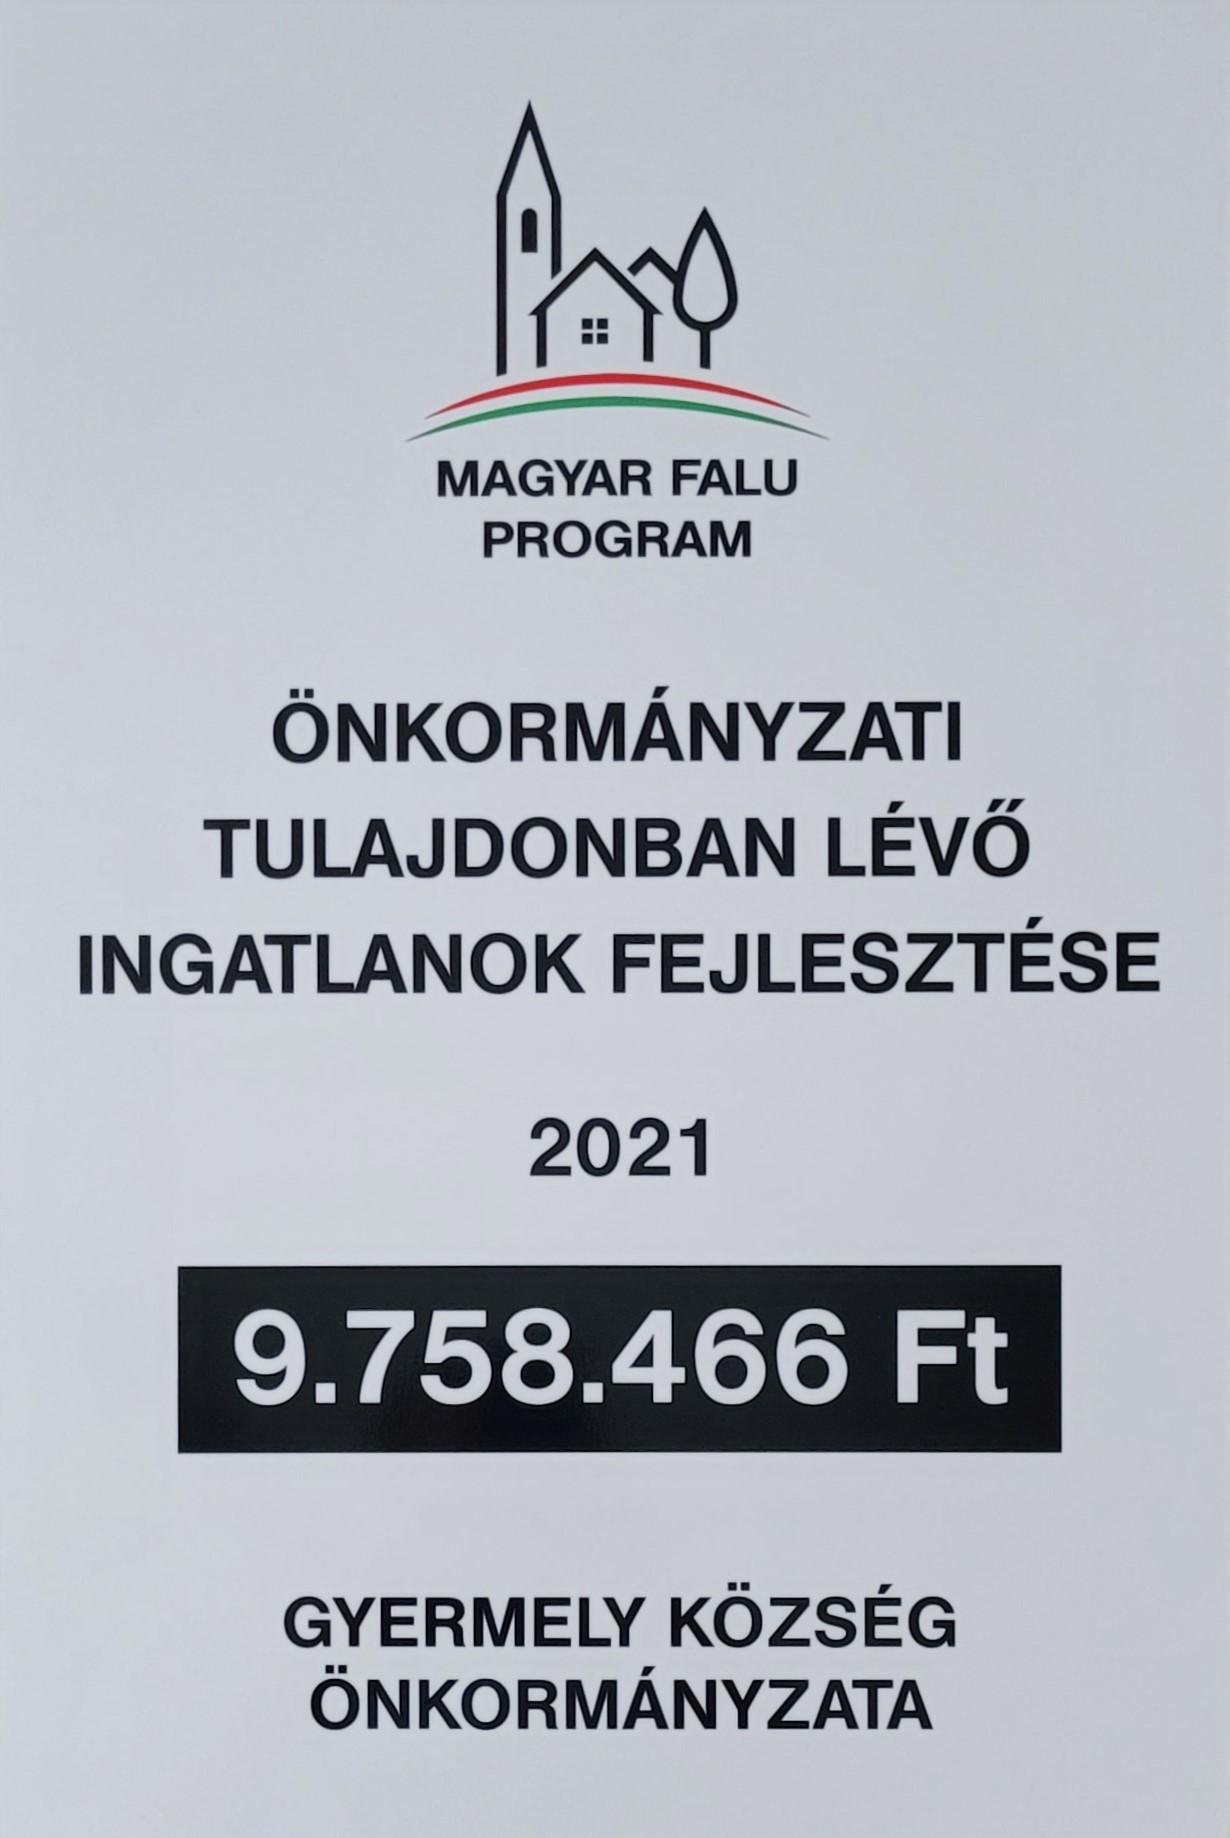 Magyar Falu Program - Önkormányzati Tulajdonban Lévő Ingatlanok Fejlesztése 2021